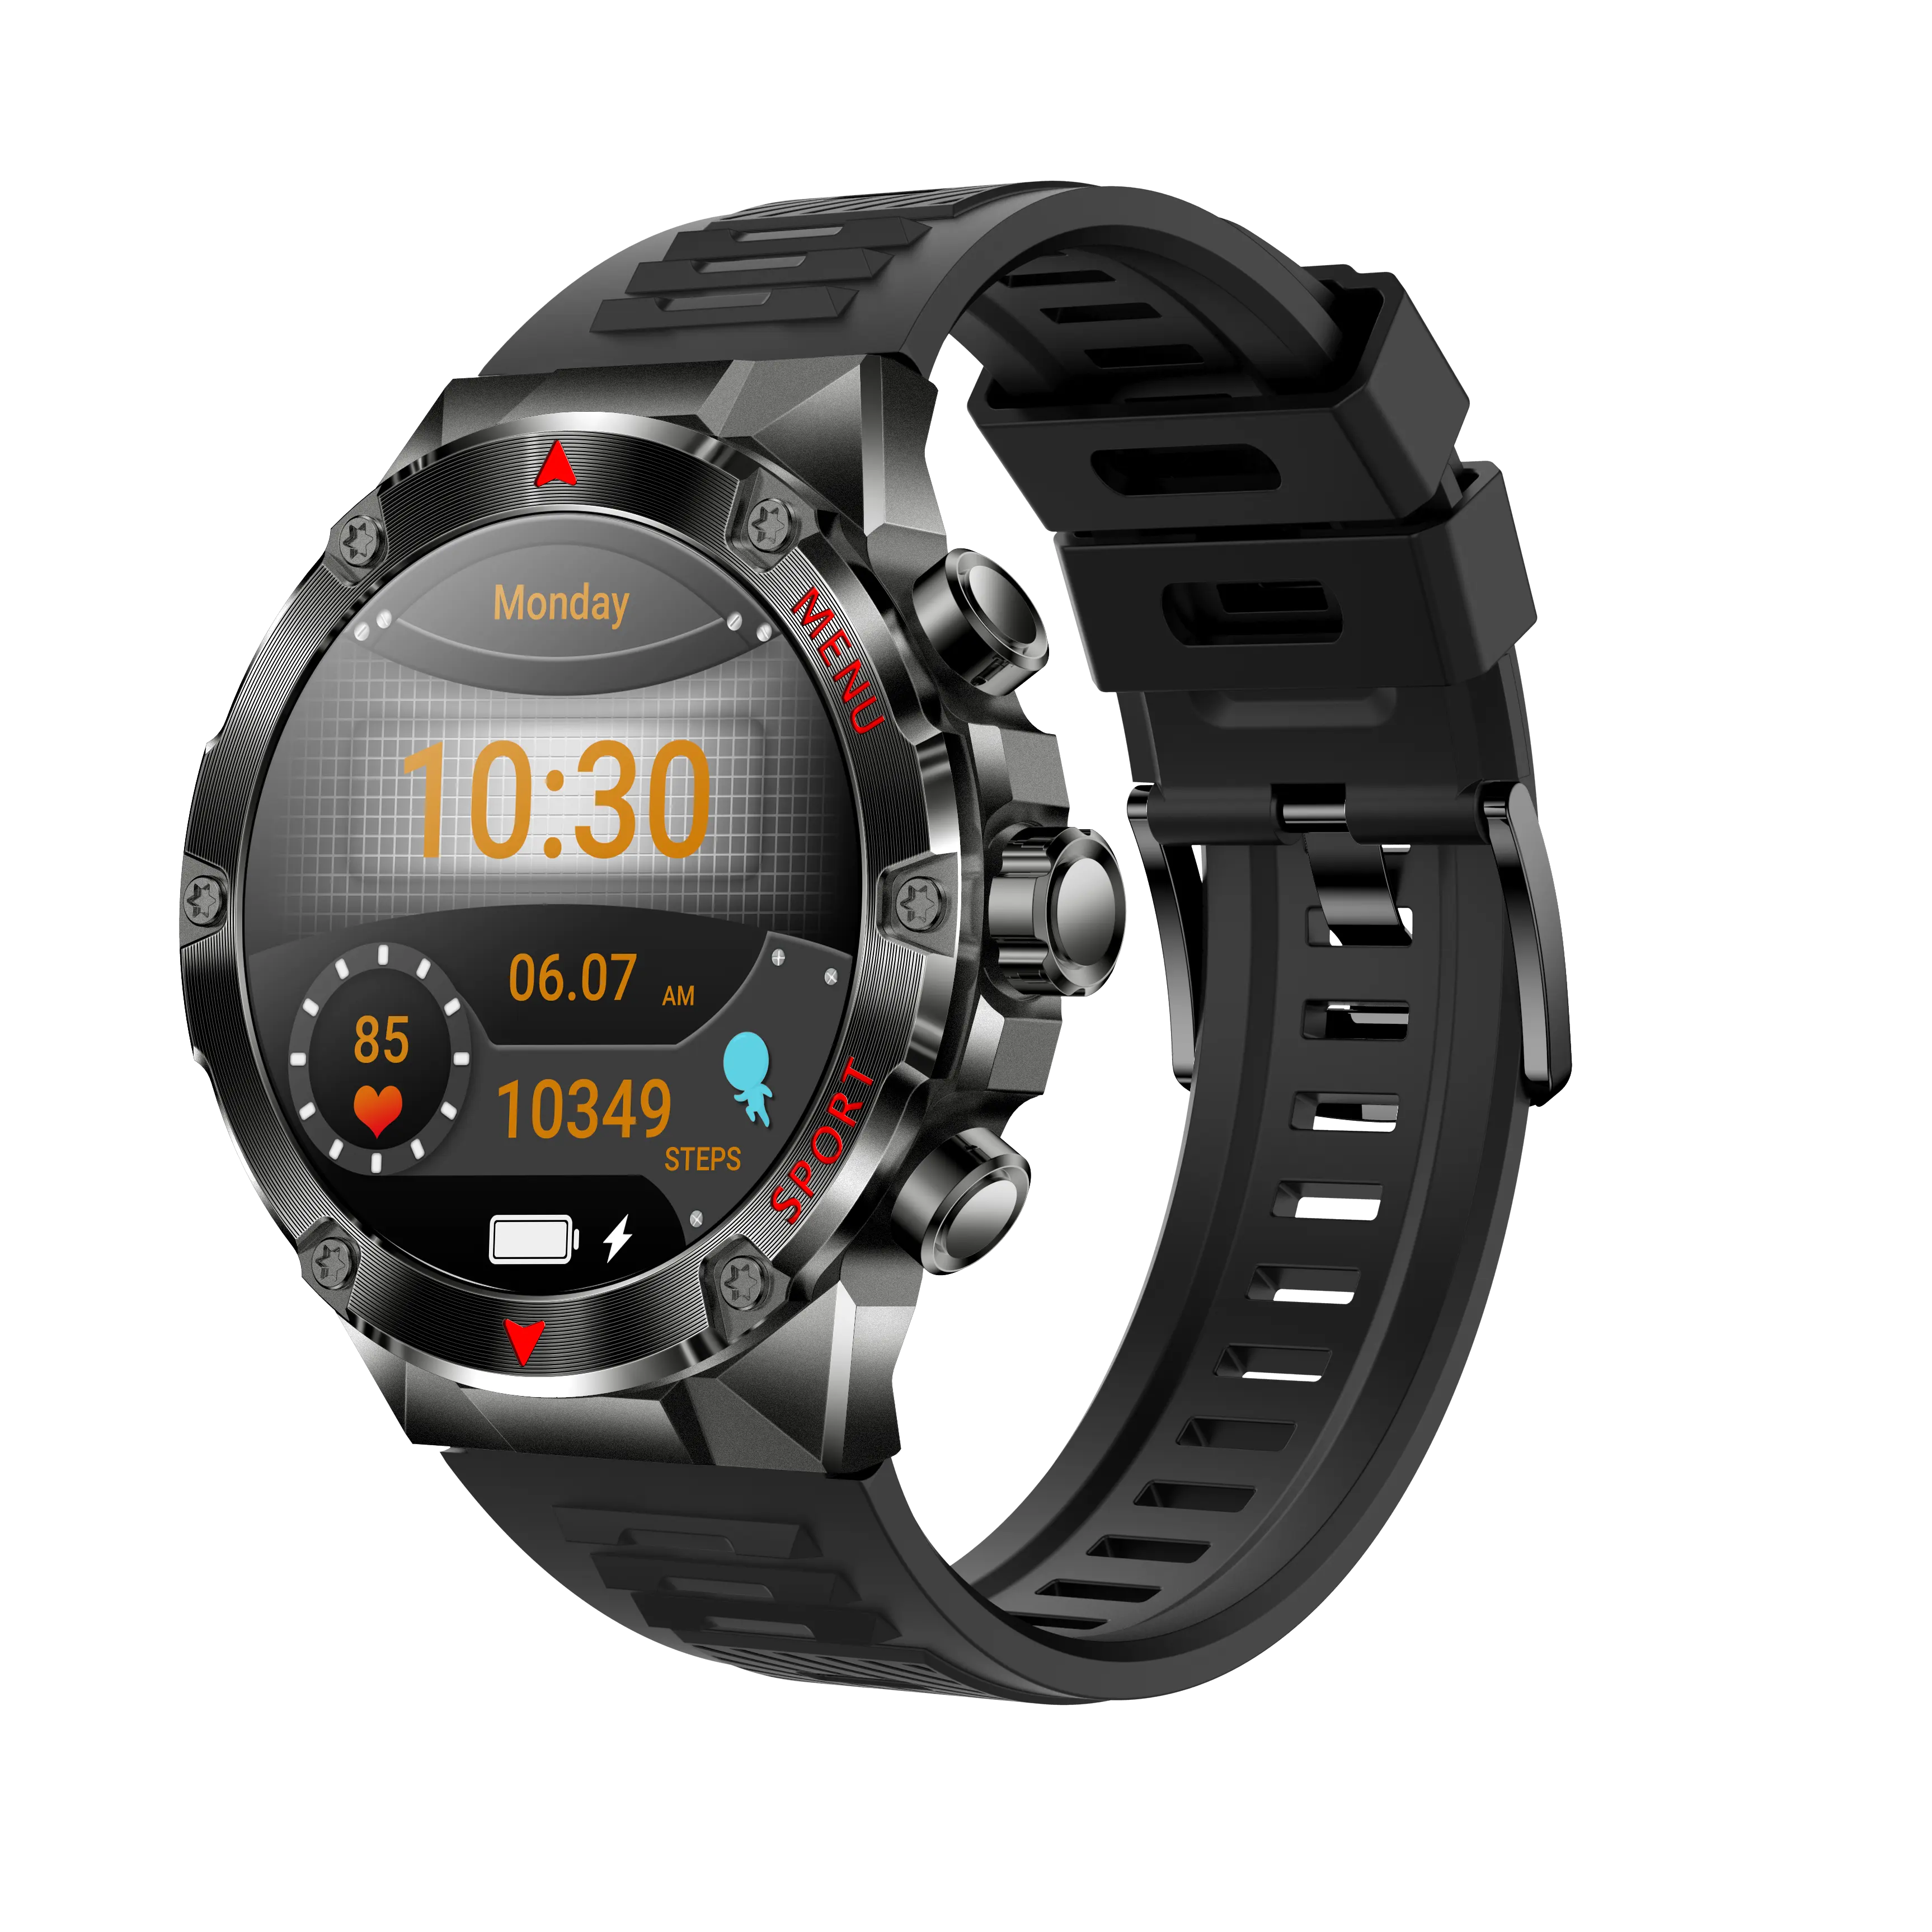 Jam tangan pintar pemantau kesehatan, arloji cerdas layar warna Hd sentuhan penuh 1.43 inci, panggilan satu sentuh, aplikasi peringkat tahan air Ip67, pemantau denyut jantung